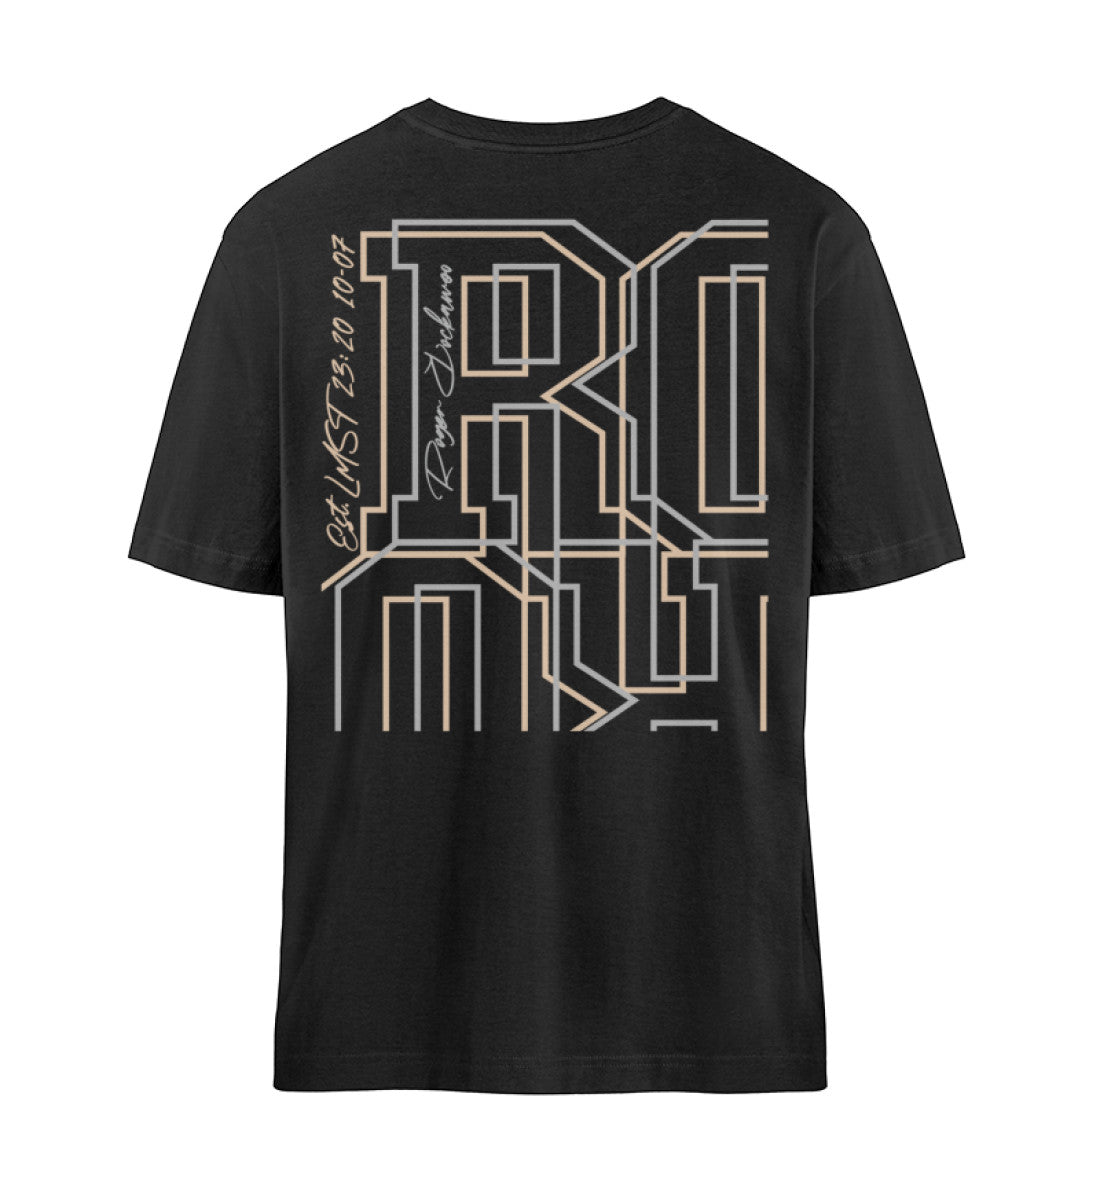 Schwarzes T-Shirt Unisex Relaxed Fit für Frauen und Männer bedruckt mit dem Design der Roger Rockawoo Kollektion Desperate and displeased